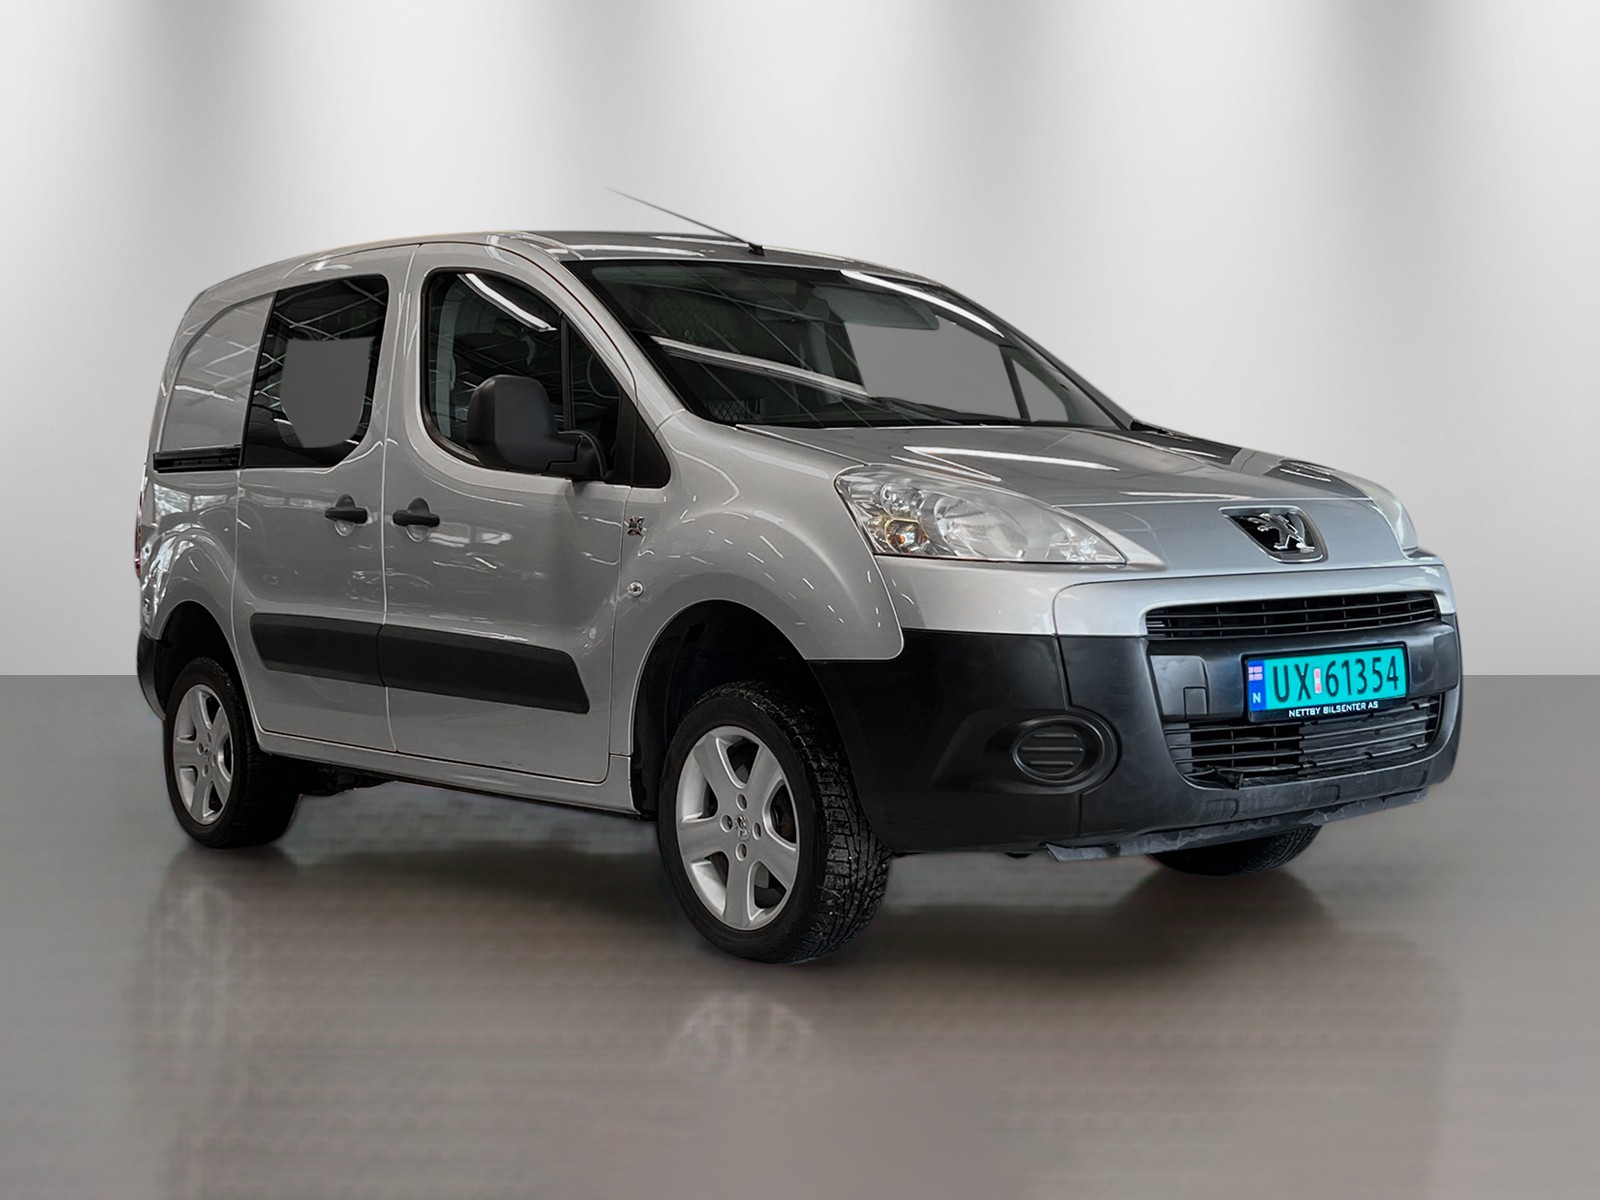 Bilde av 'Peugeot Partner 2012'